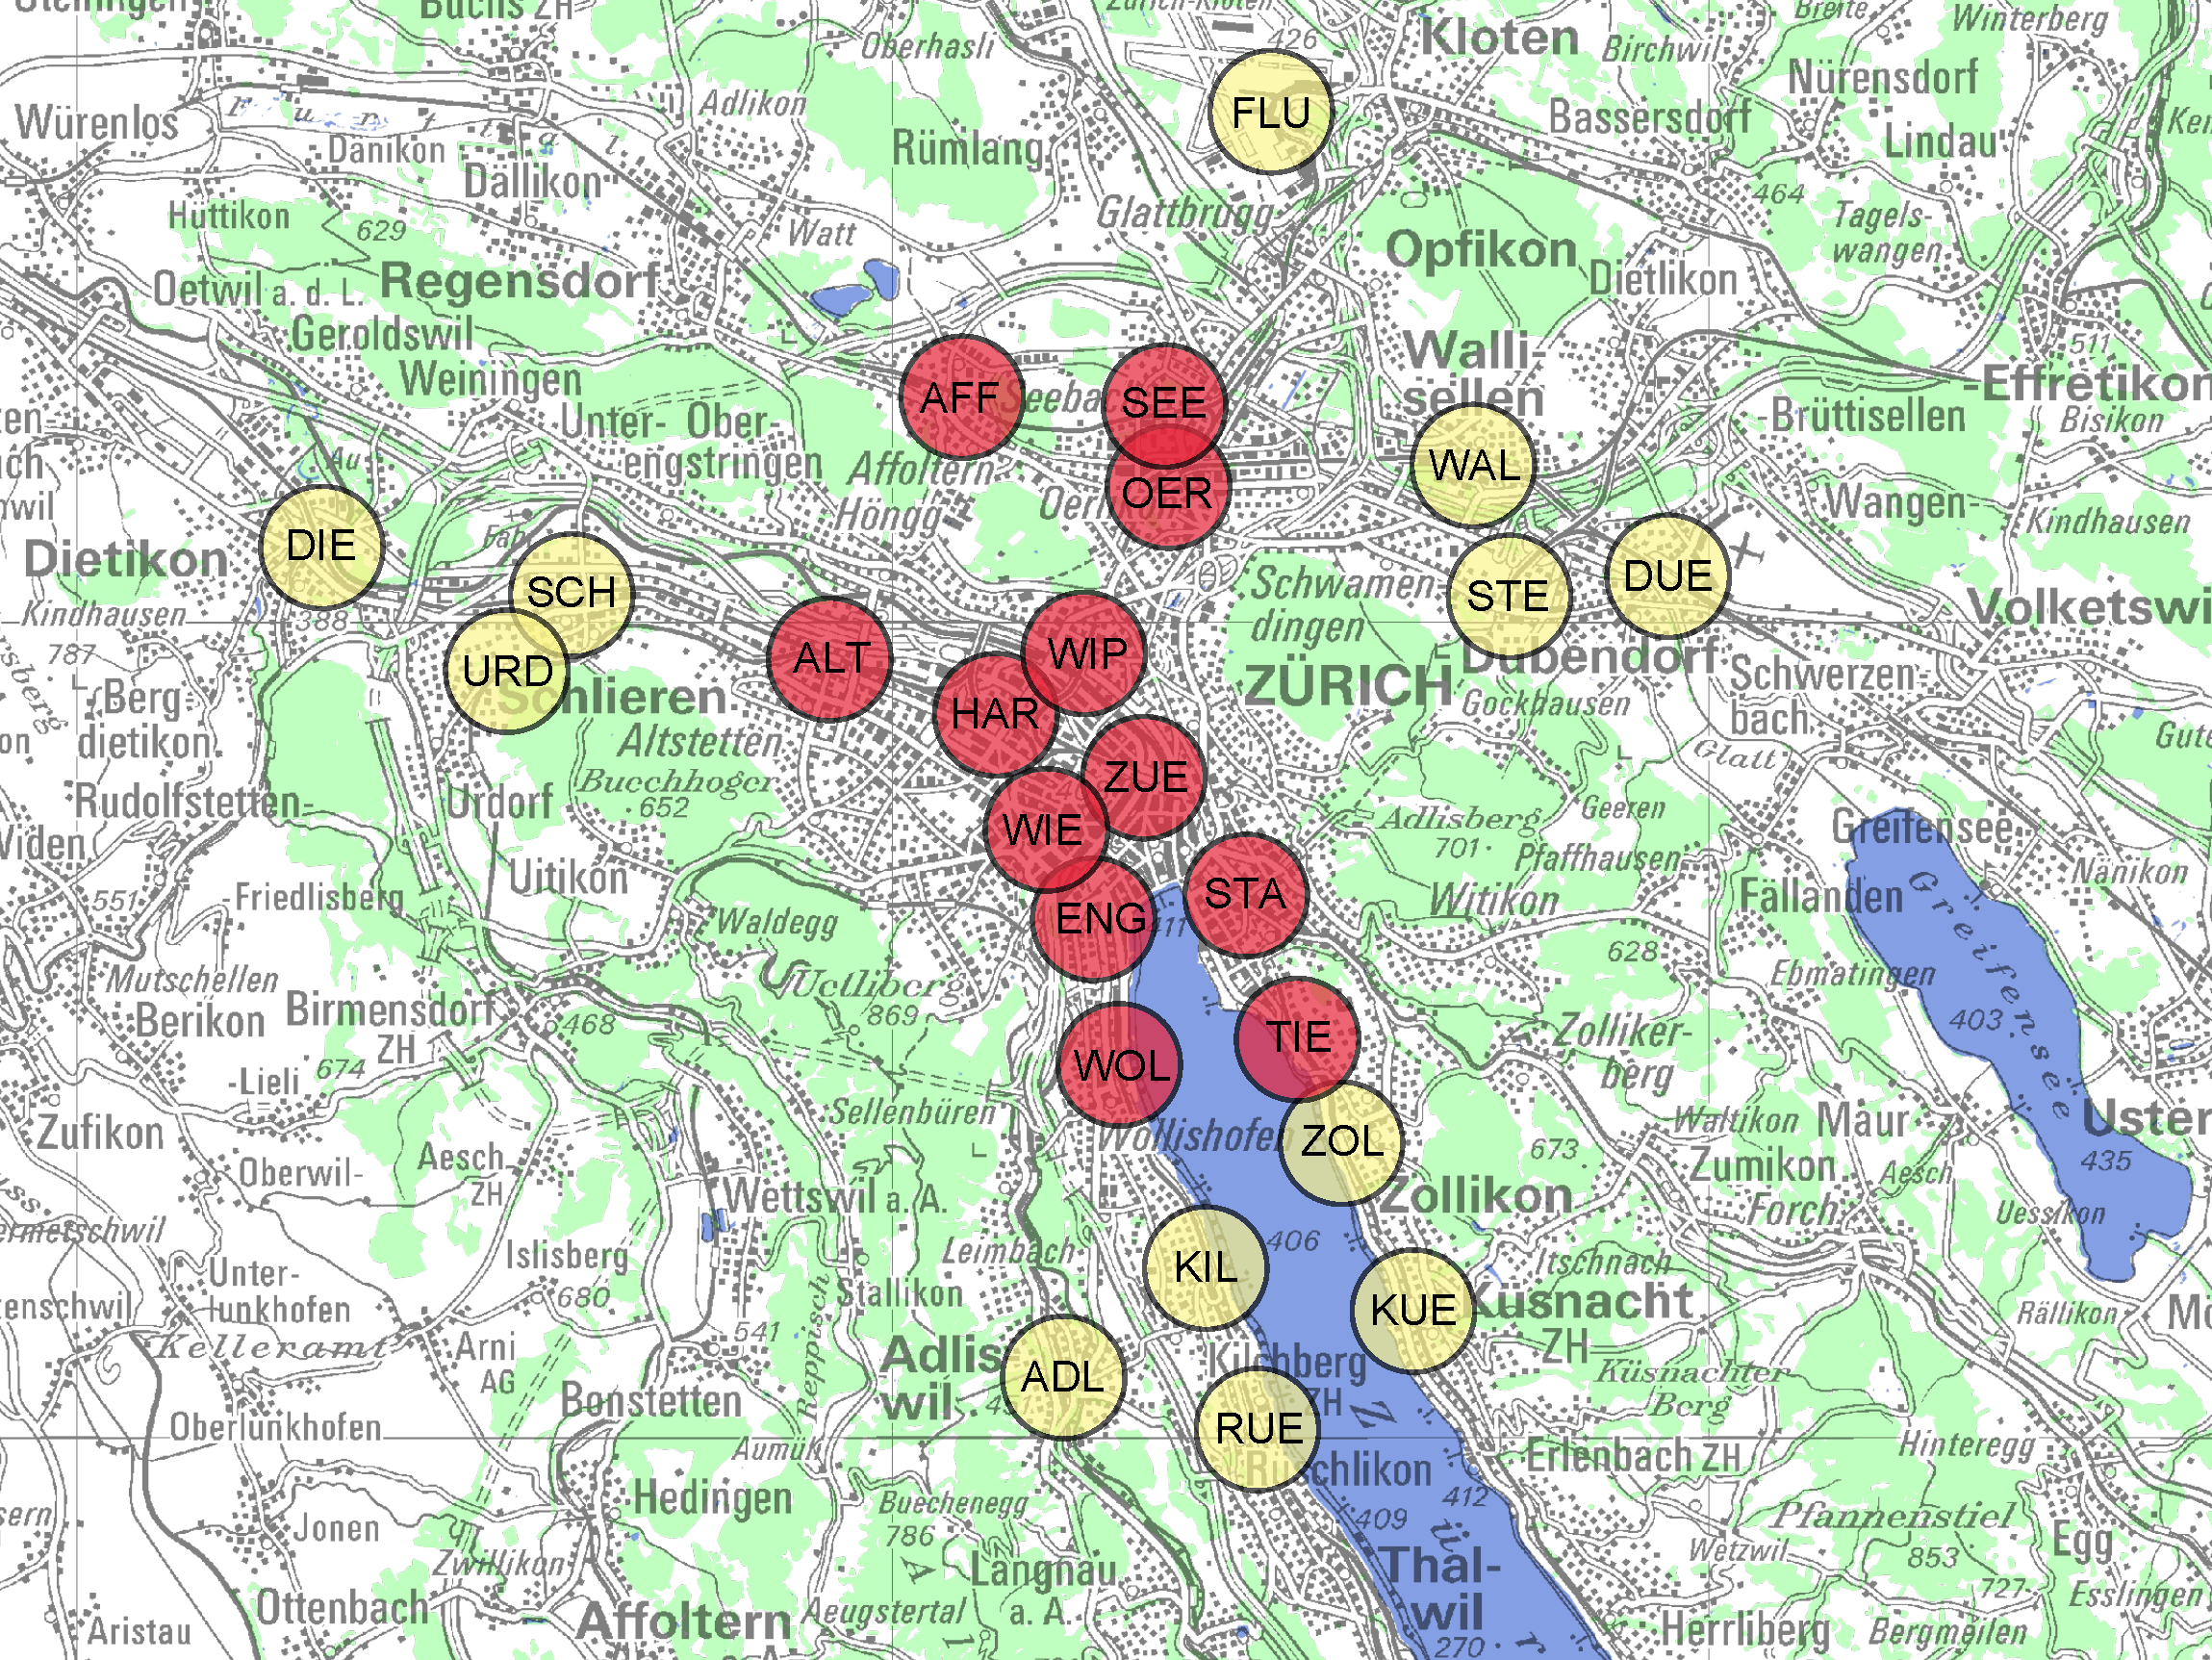 Kartenausschnitt mit Hubs in der Stadt Zürich und weitere zwölf in der Agglomeration.